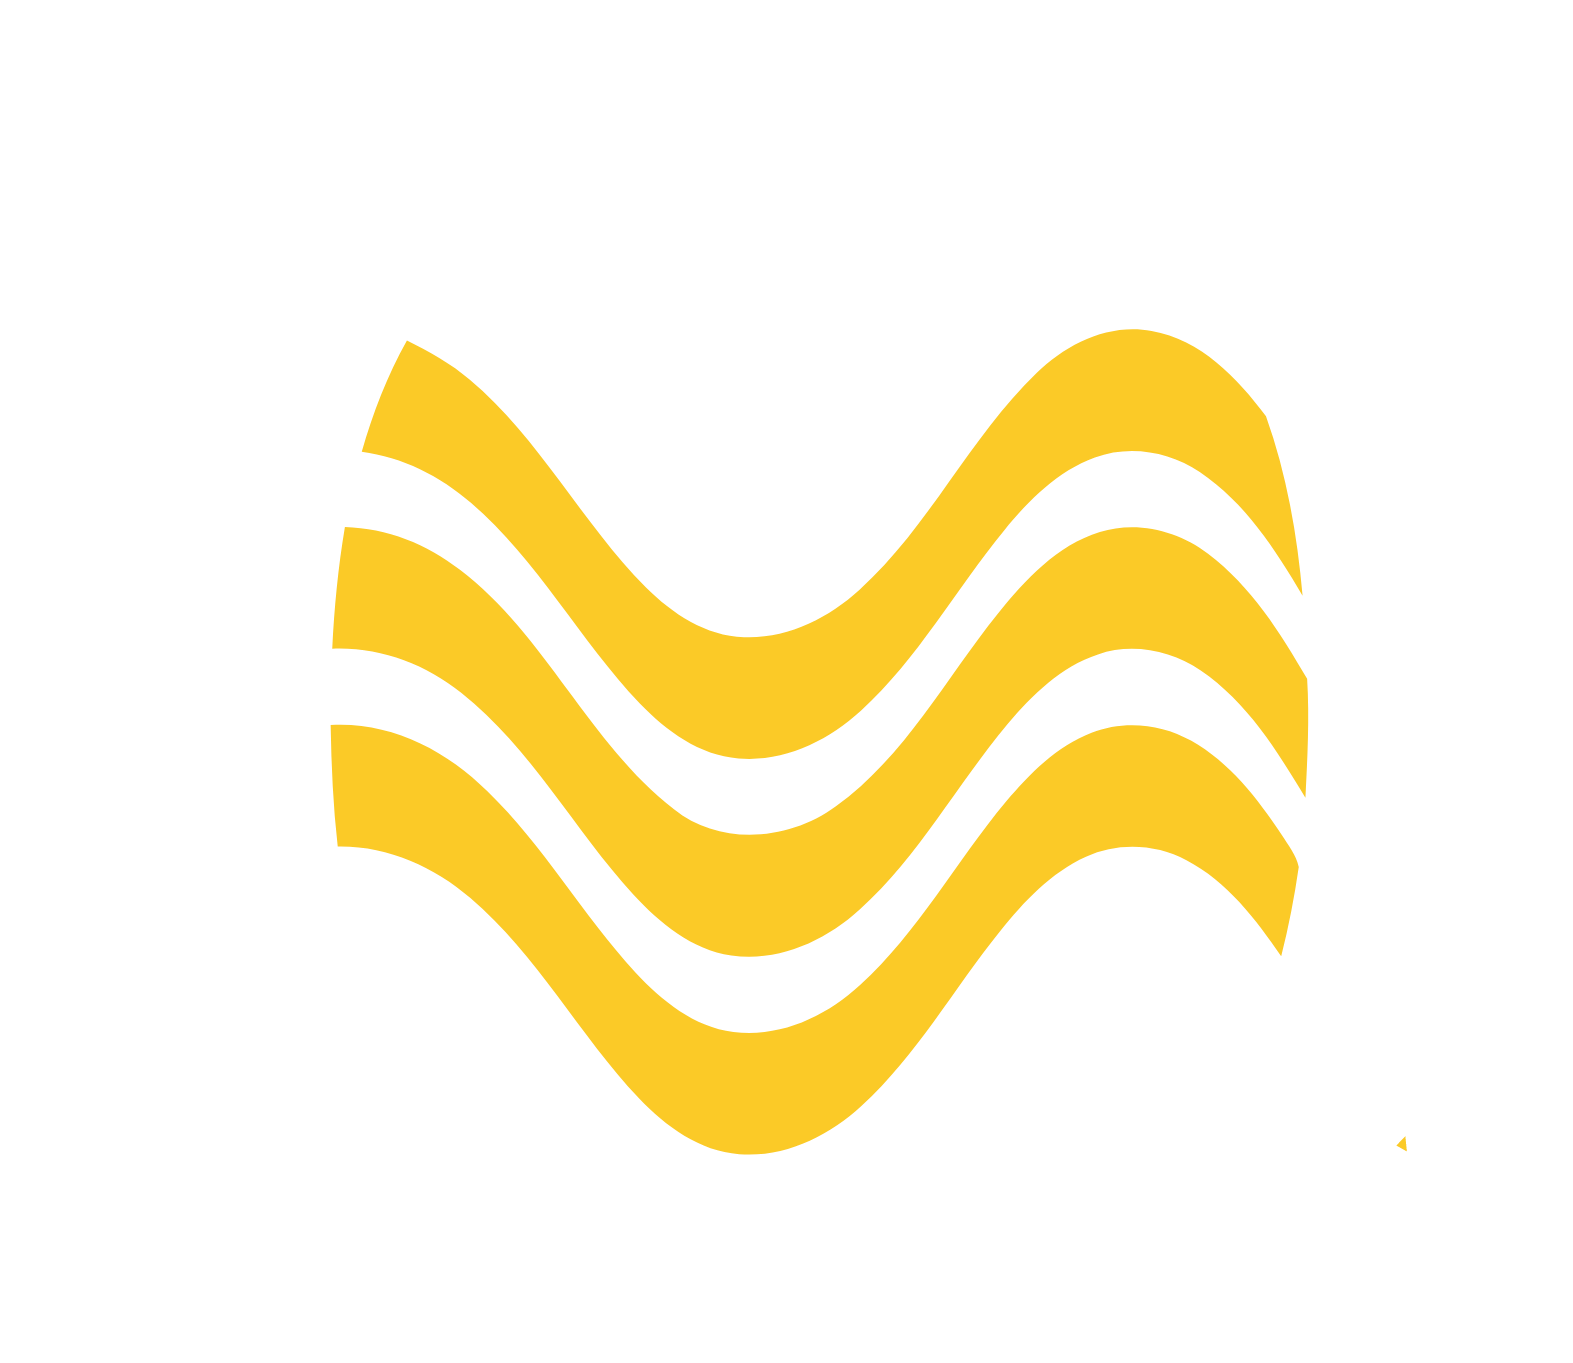 Fortis logo for dark backgrounds (transparent PNG)